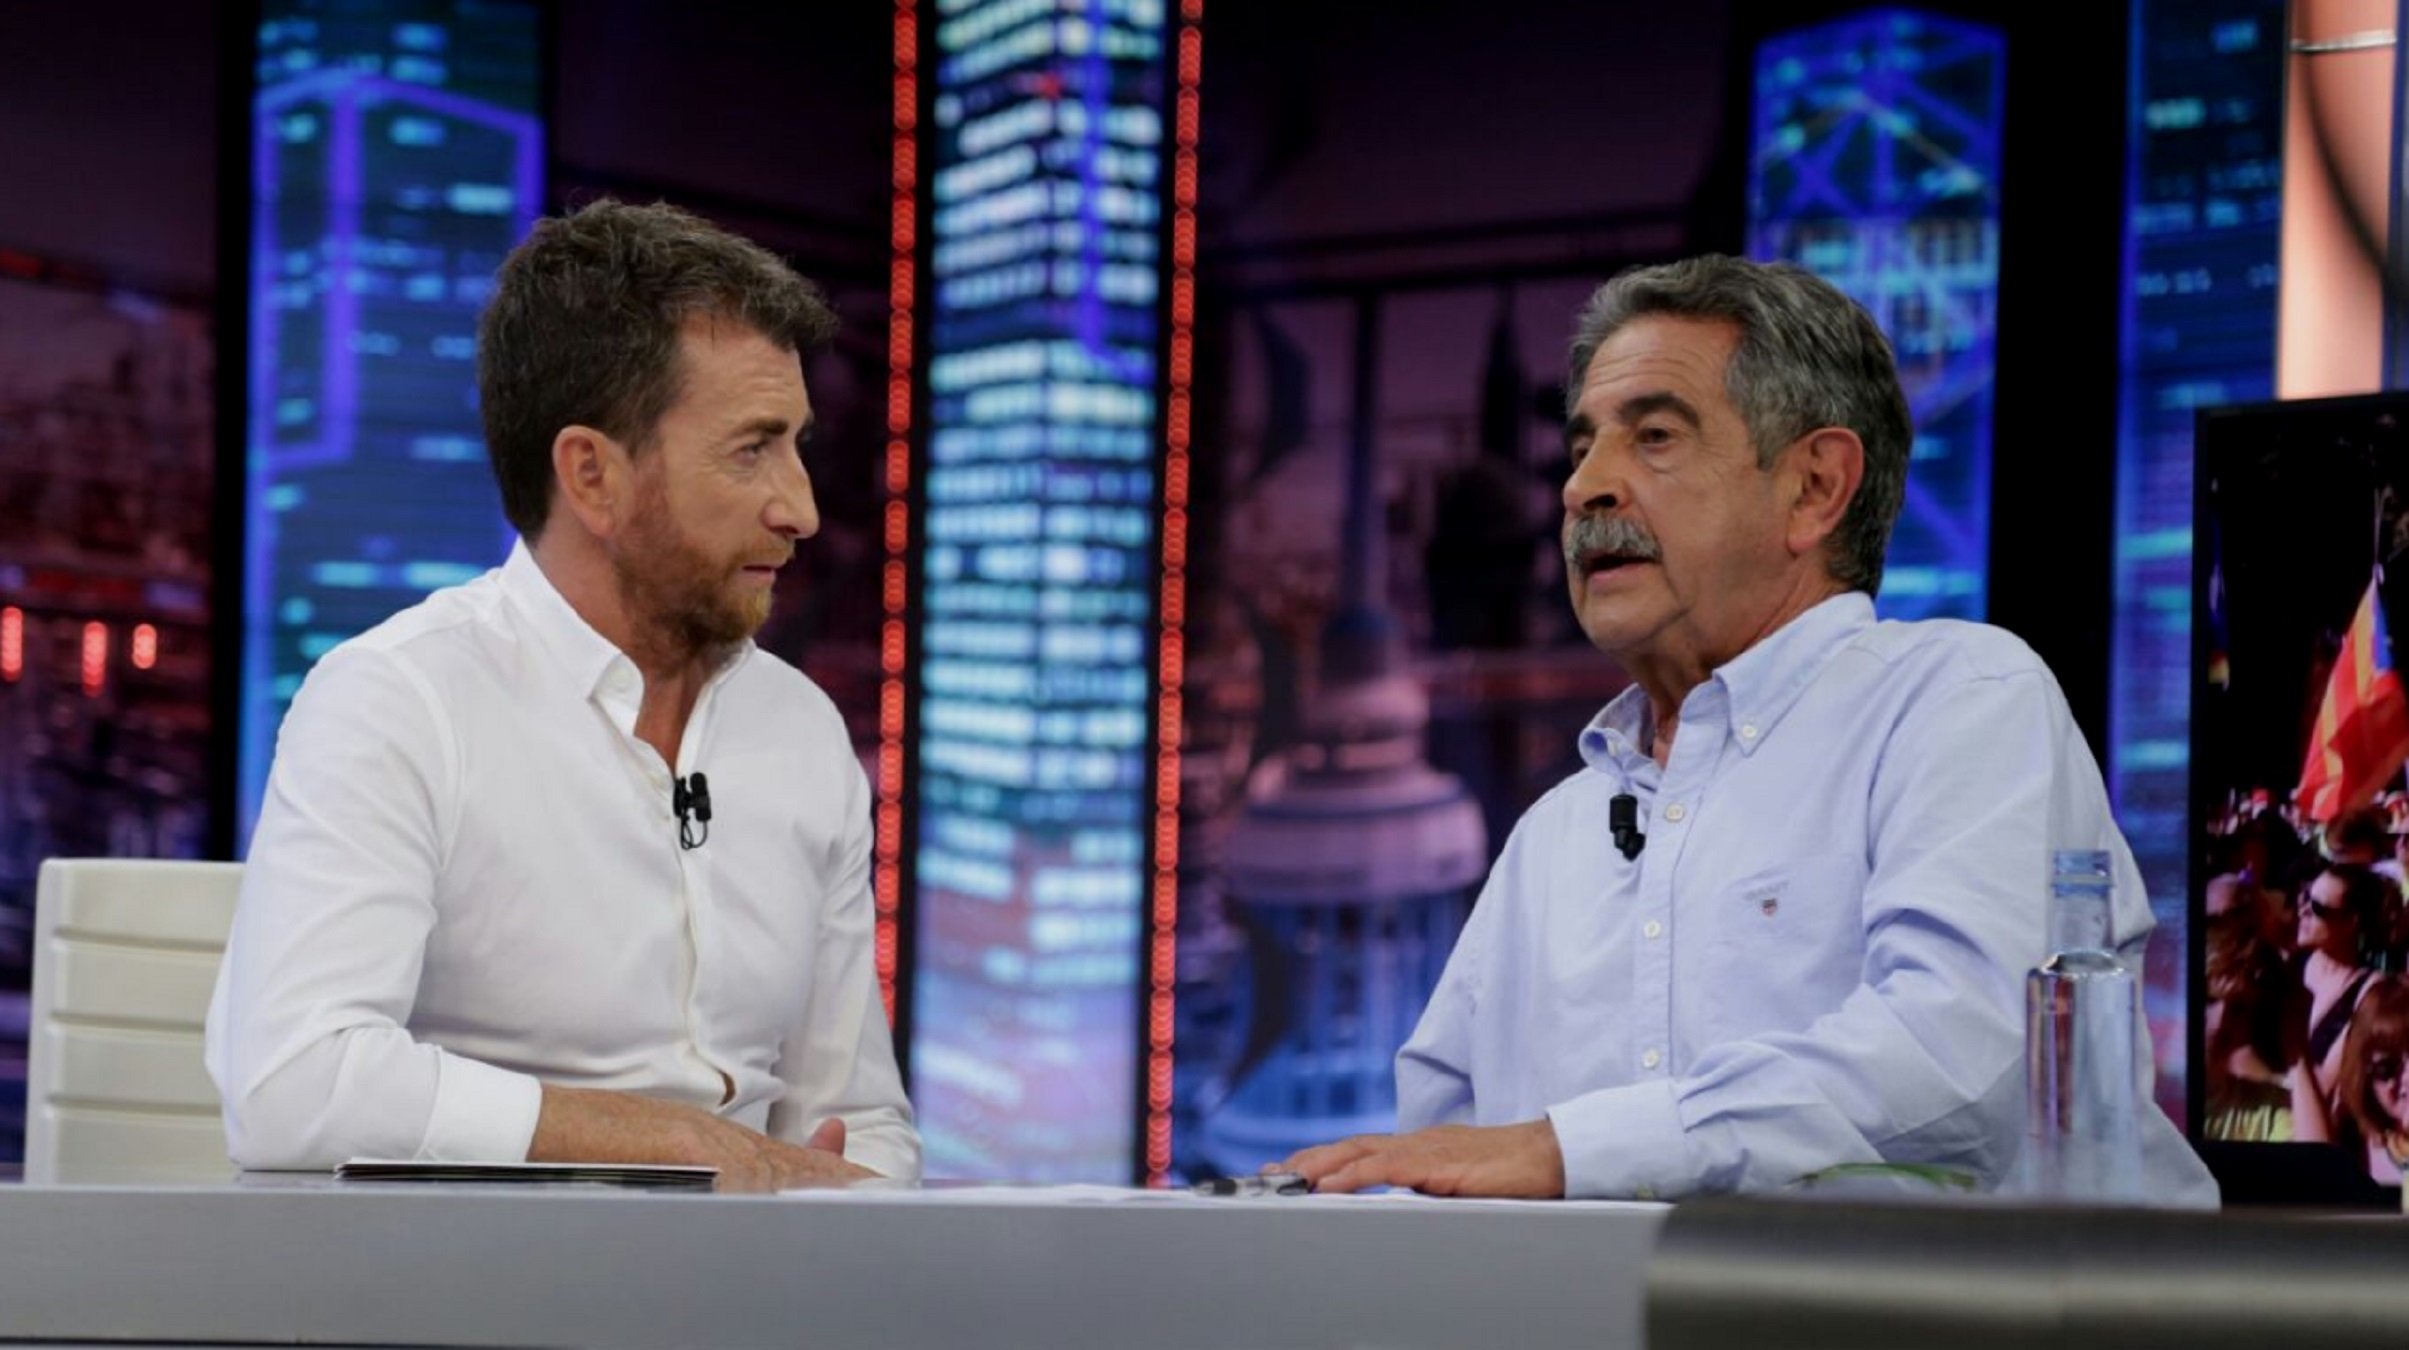 Tornen a carregar contra TV3 a 'El Hormiguero': "Manipula el poble"